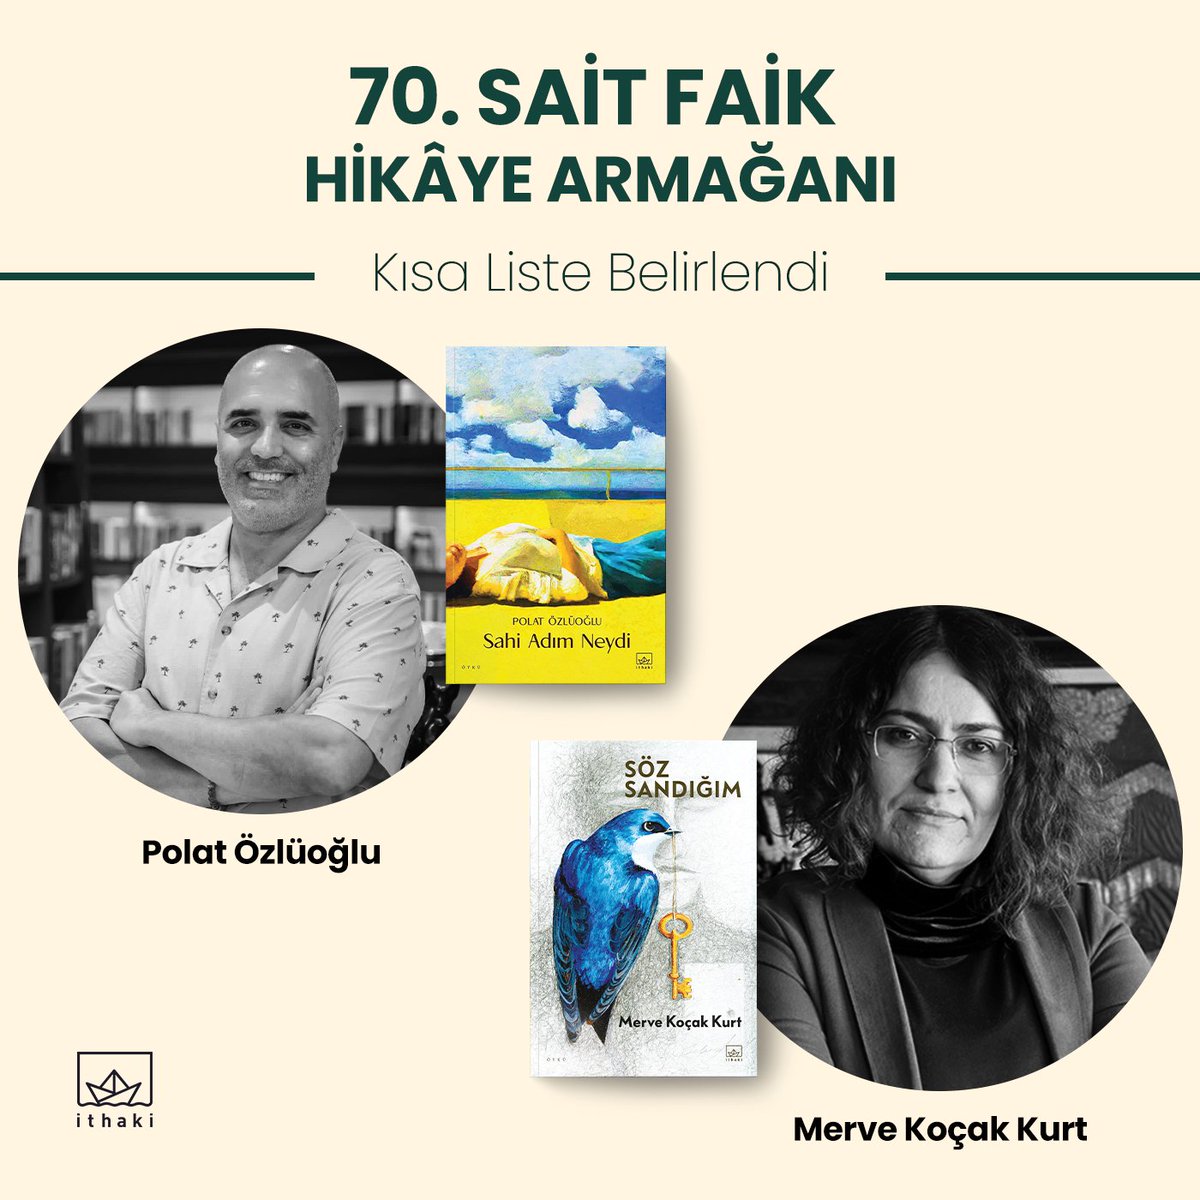 Kitaplarıyla 70. Sait Faik Hikâye Armağanı Kısa Listesi'nde yer alan yazarlarımız Merve Koçak Kurt ve Polat Özlüoğlu'nu tebrik ederiz.